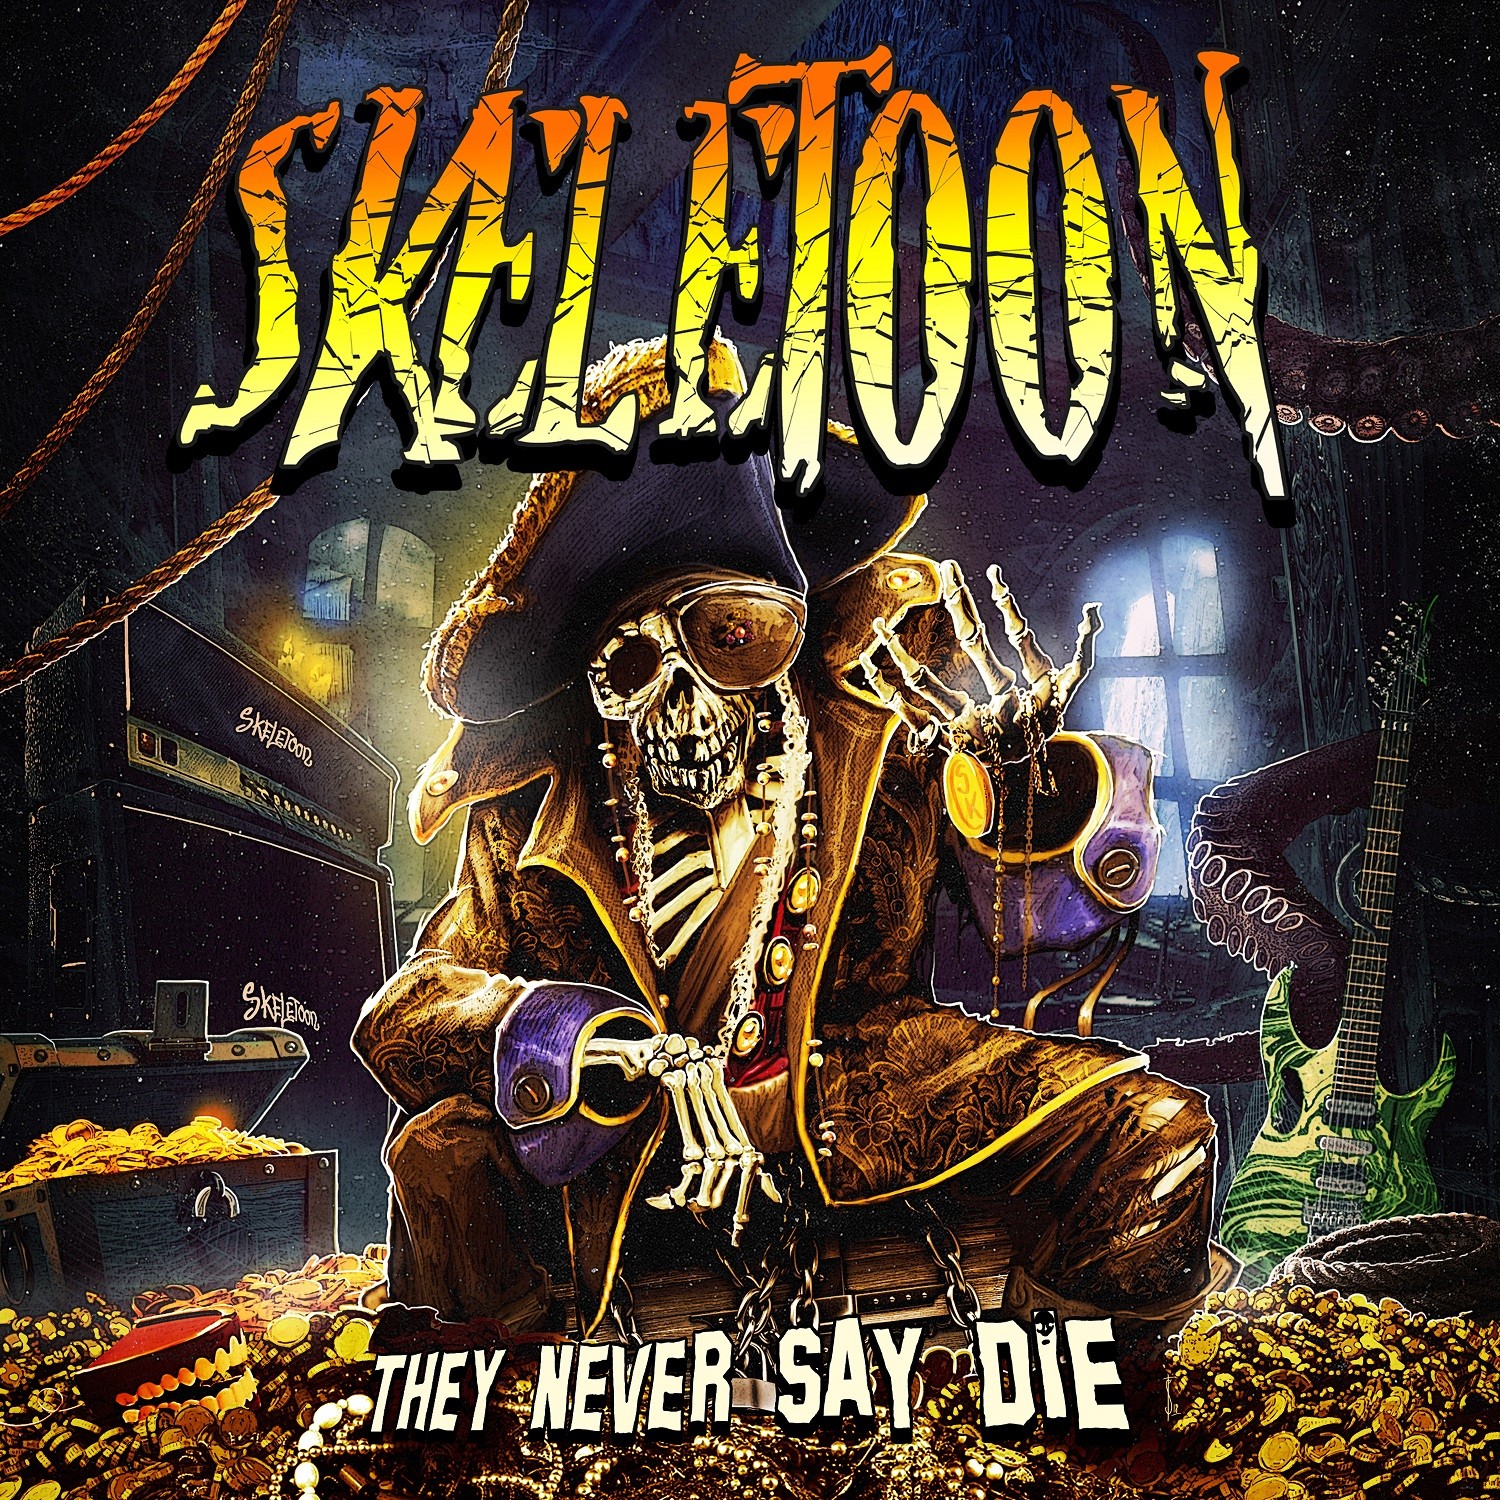 Skeletoon - They Never Say Die